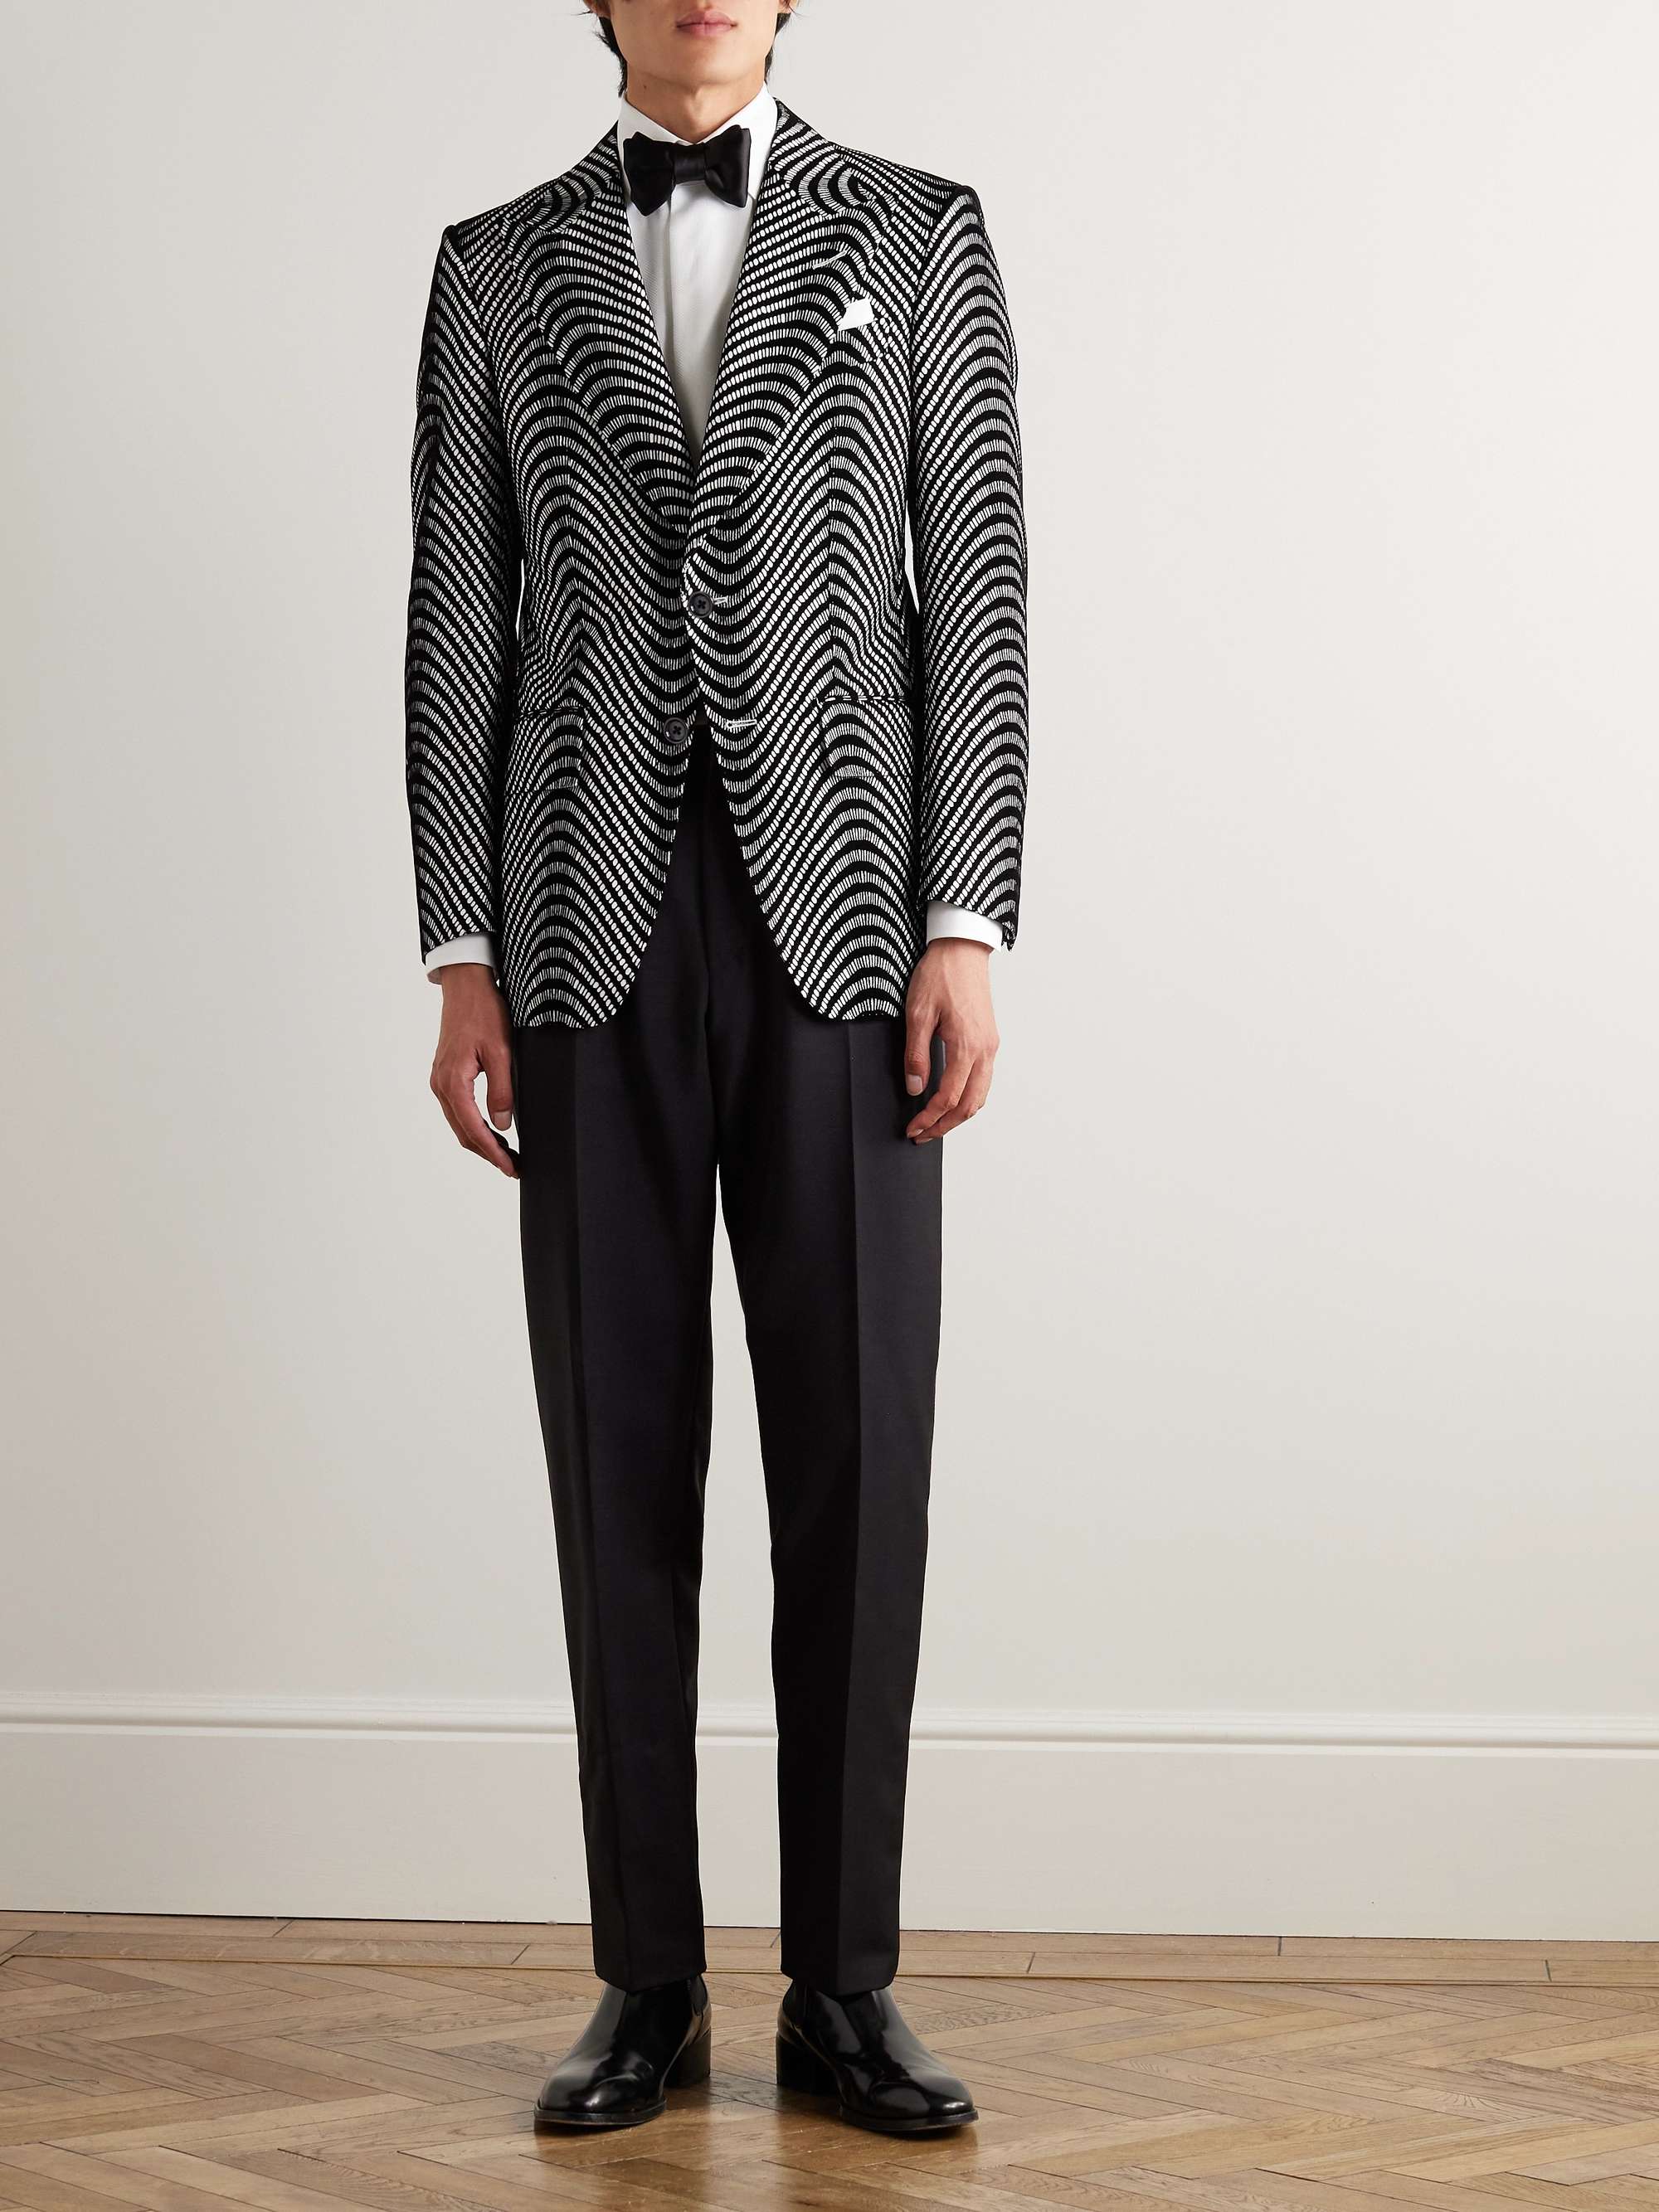 TOM FORD Atticus Slim-Fit Velvet-Jacquard Tuxedo Jacket for Men | MR PORTER